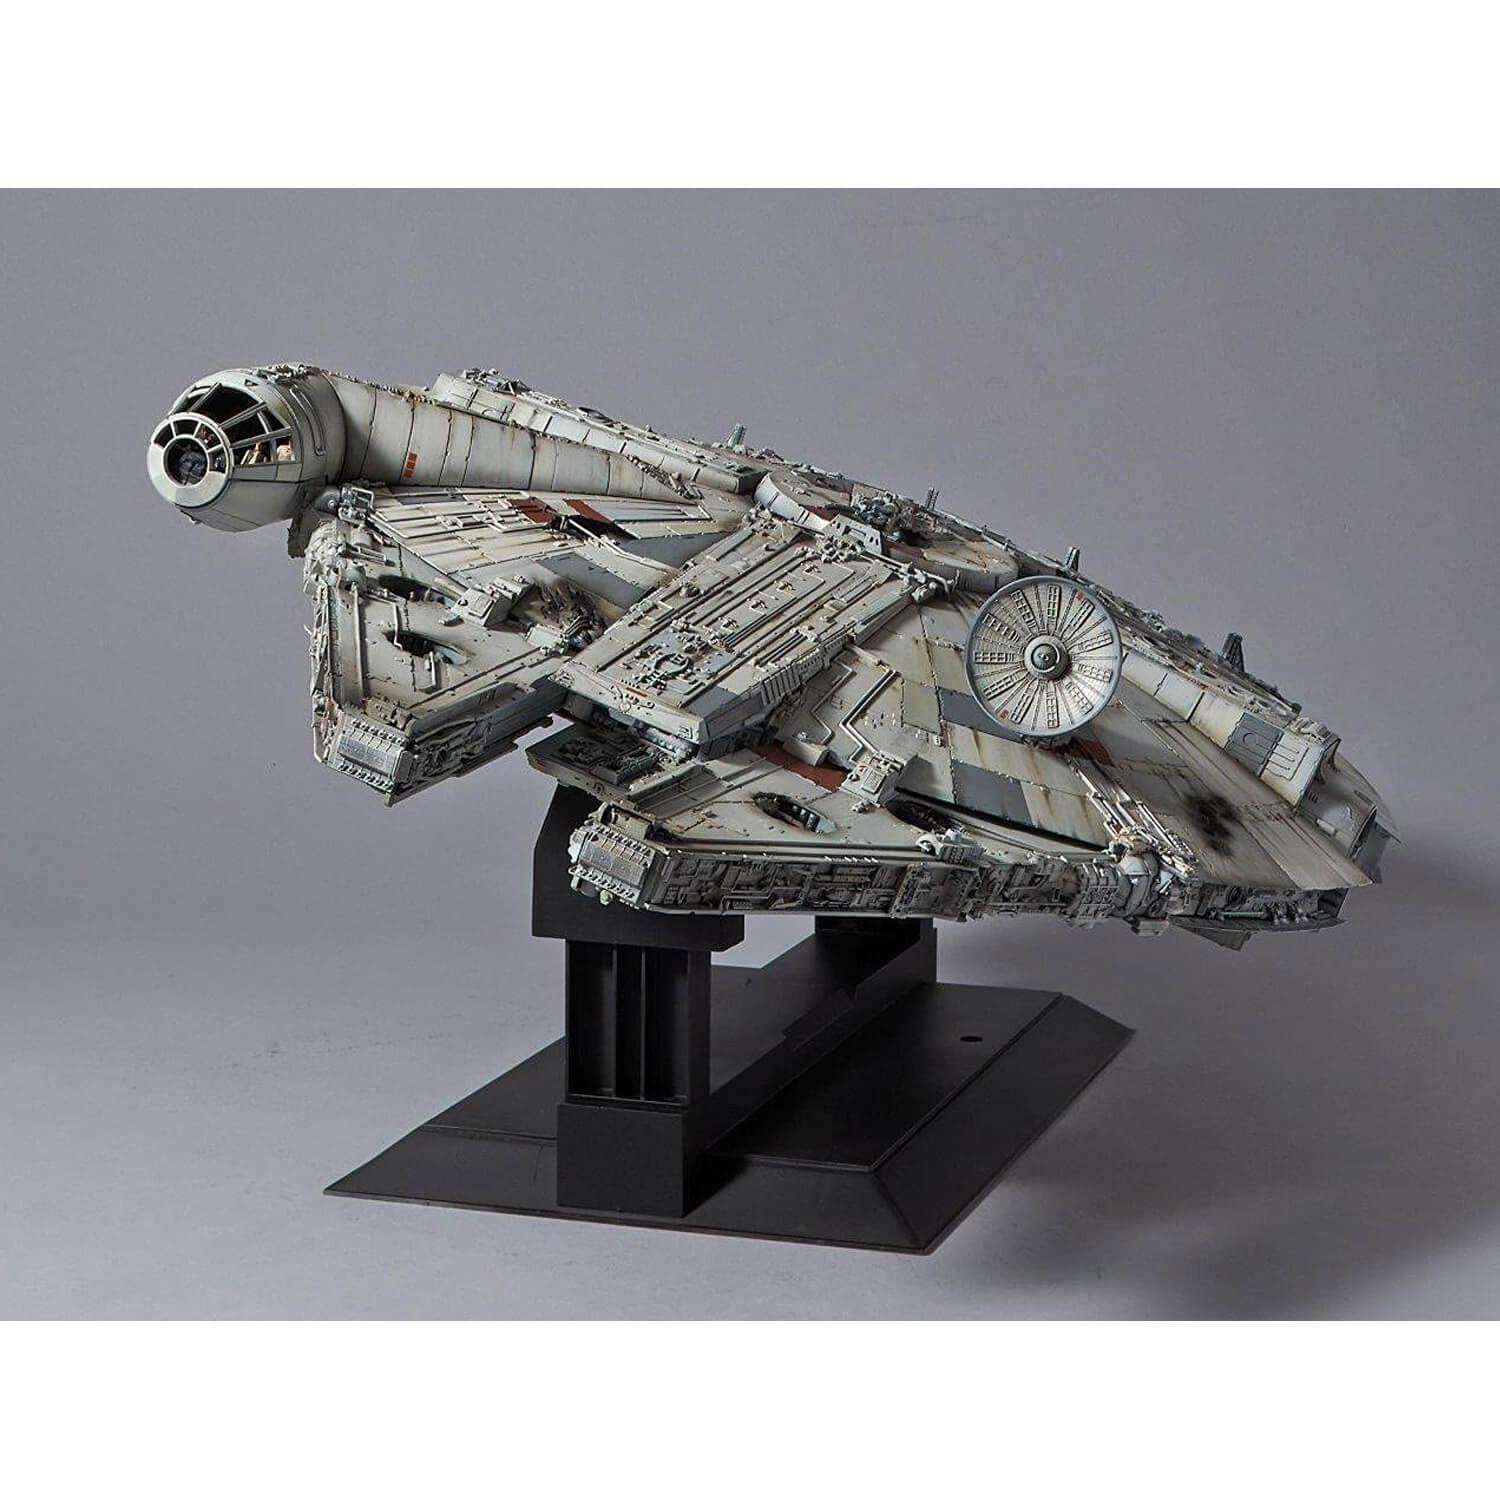 Star Wars Maqueta EasyKit 37cm Halcon Milenario 1/72 Millennium Falcon  revell